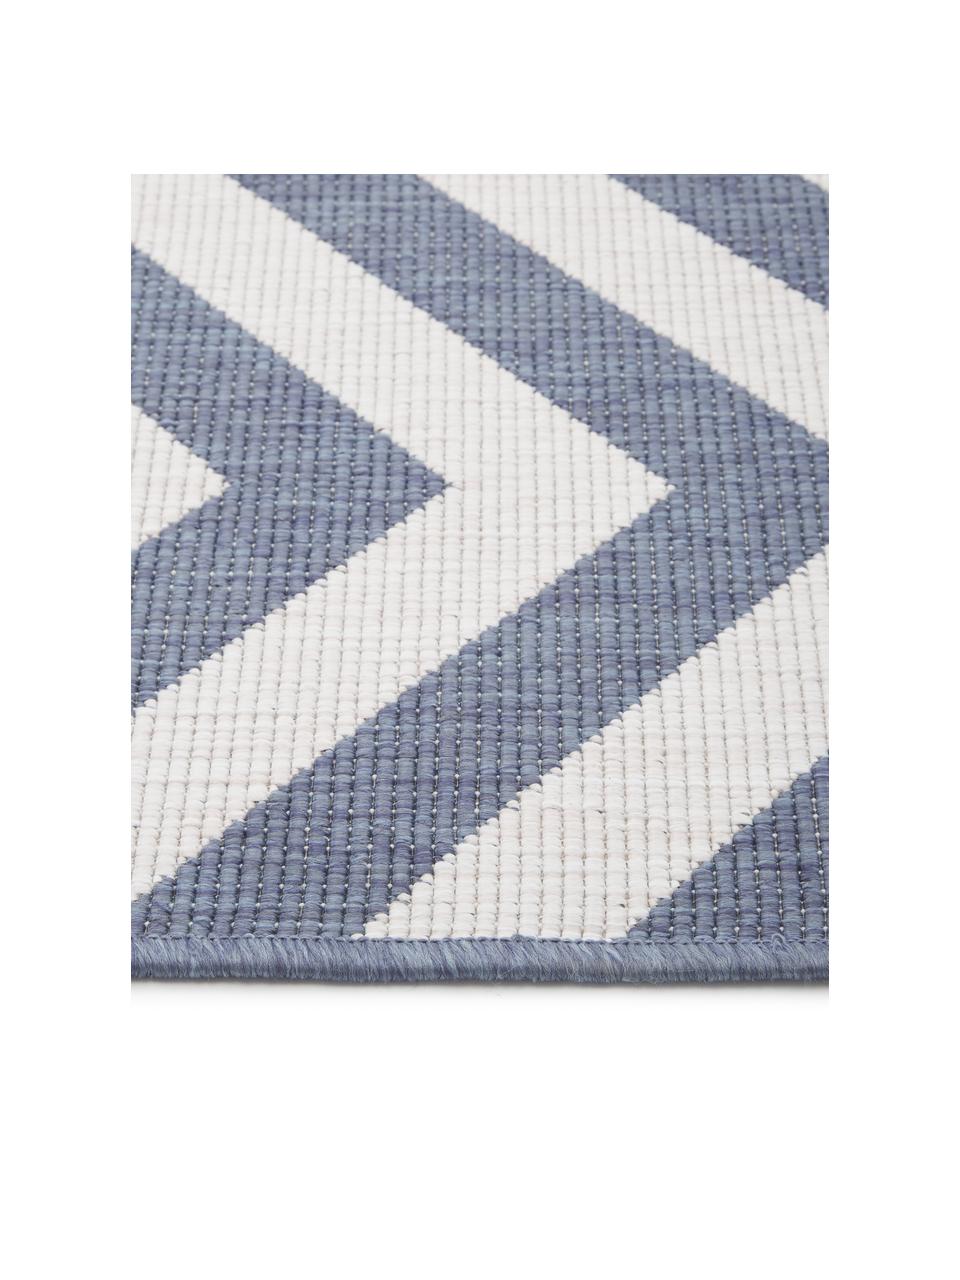 In- & Outdoor-Teppich Palma mit Zickzack-Muster, beidseitig verwendbar, 100% Polypropylen, Blau, Creme, B 200 x L 290 cm (Grösse L)